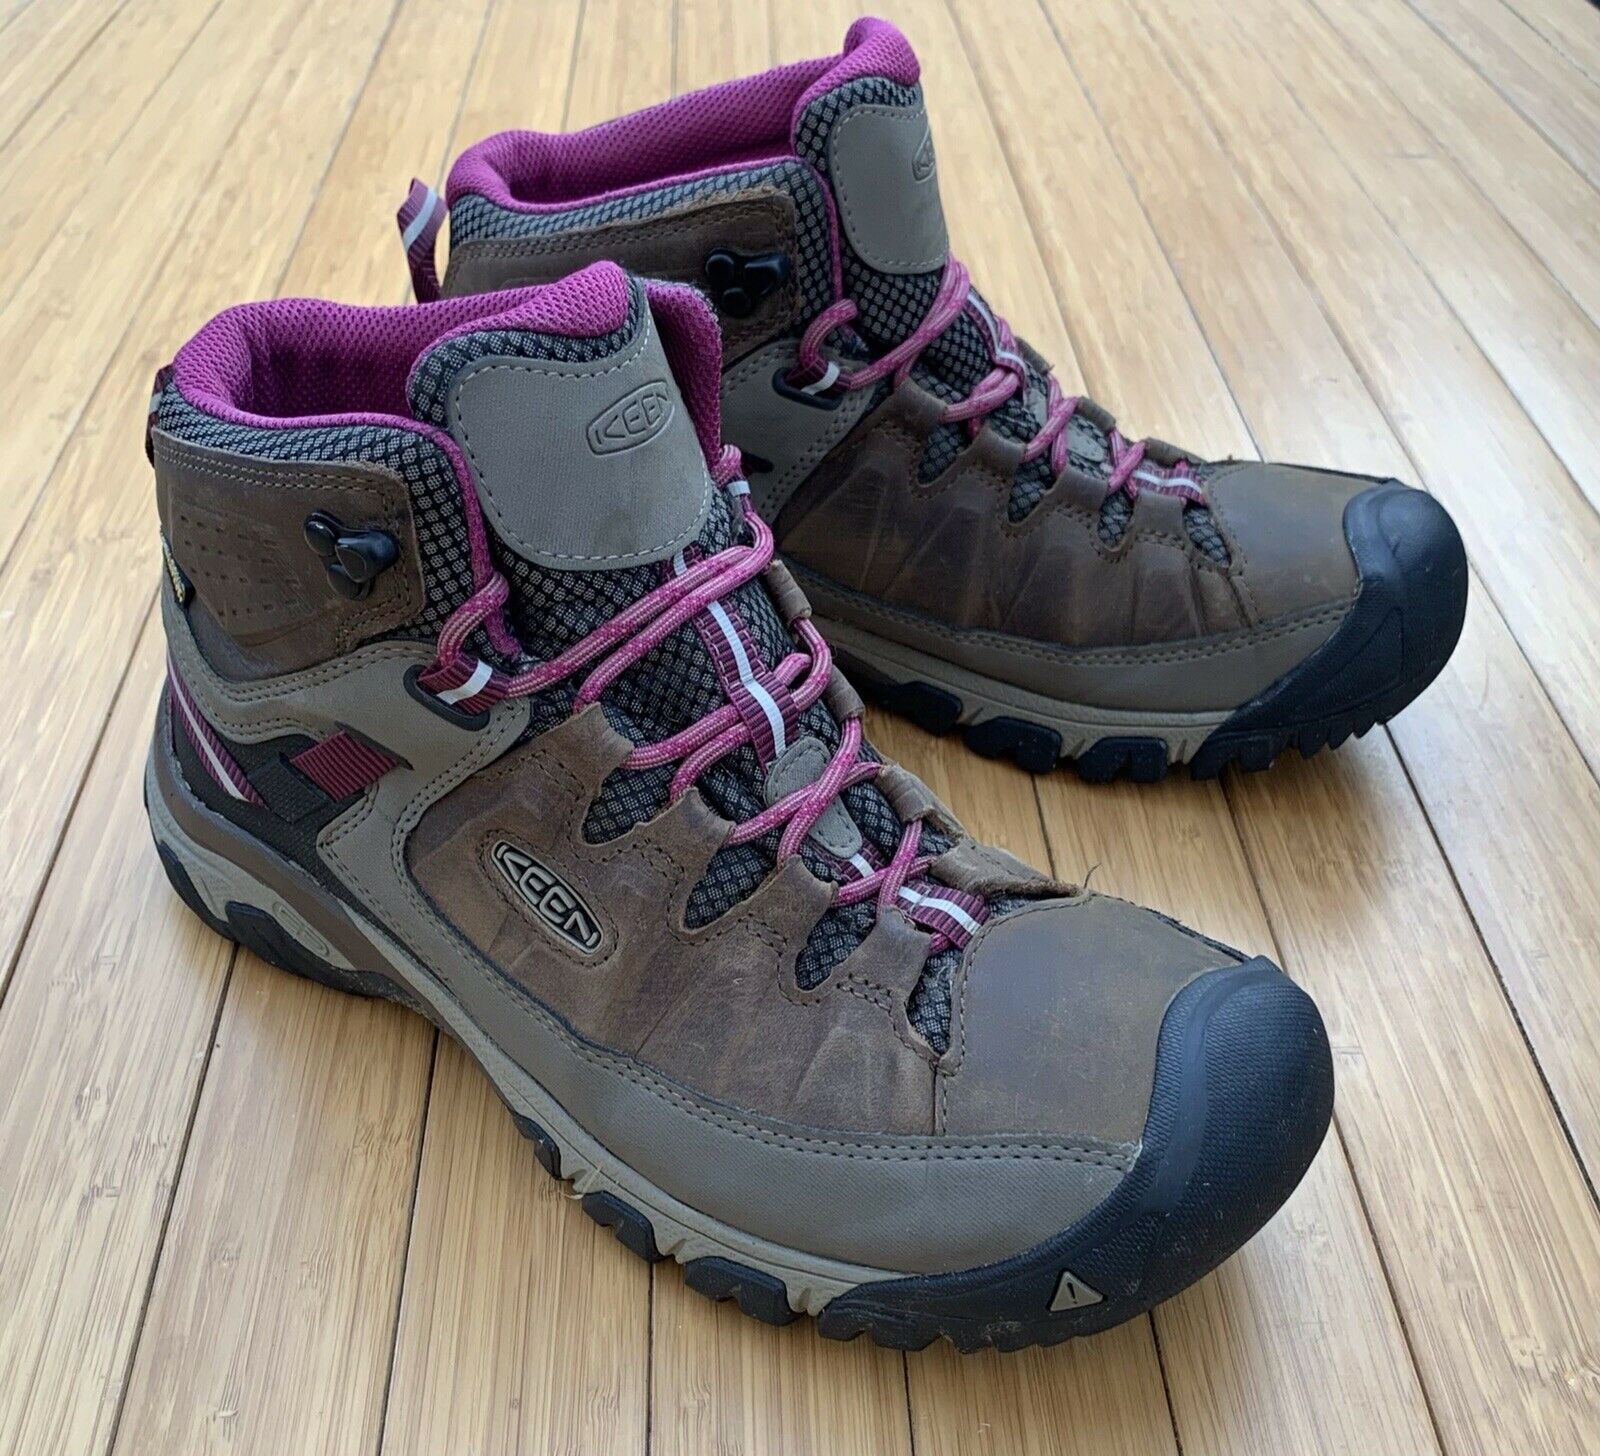 Keen Targhee III Mid Trail Hiking Boots Women’s 10.5 Waterproof KeenDry 1018178